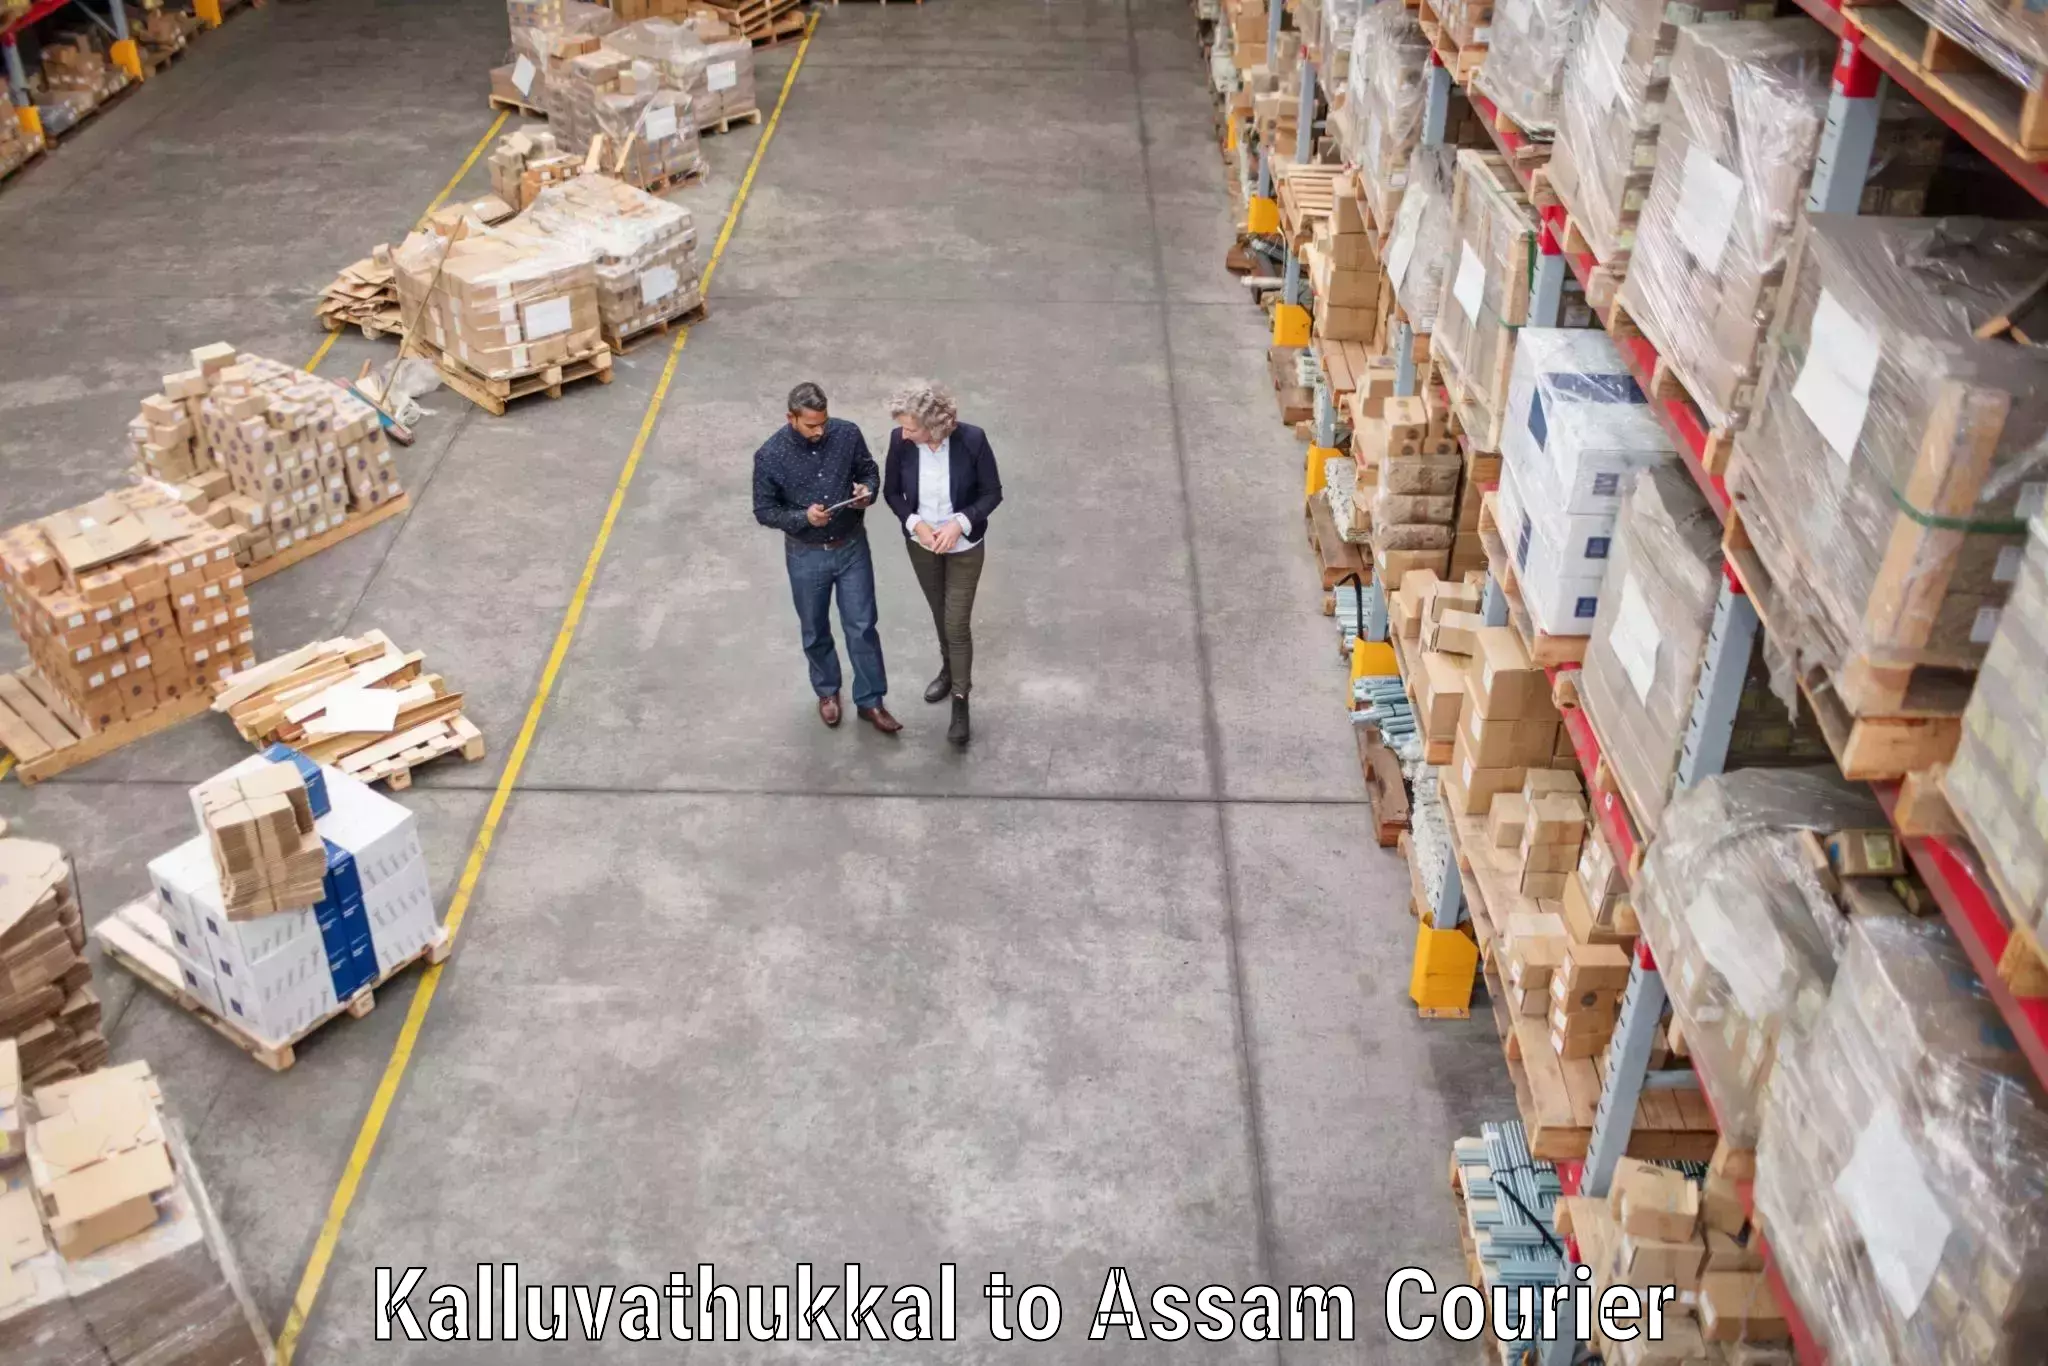 Trusted furniture movers Kalluvathukkal to Puranigudam